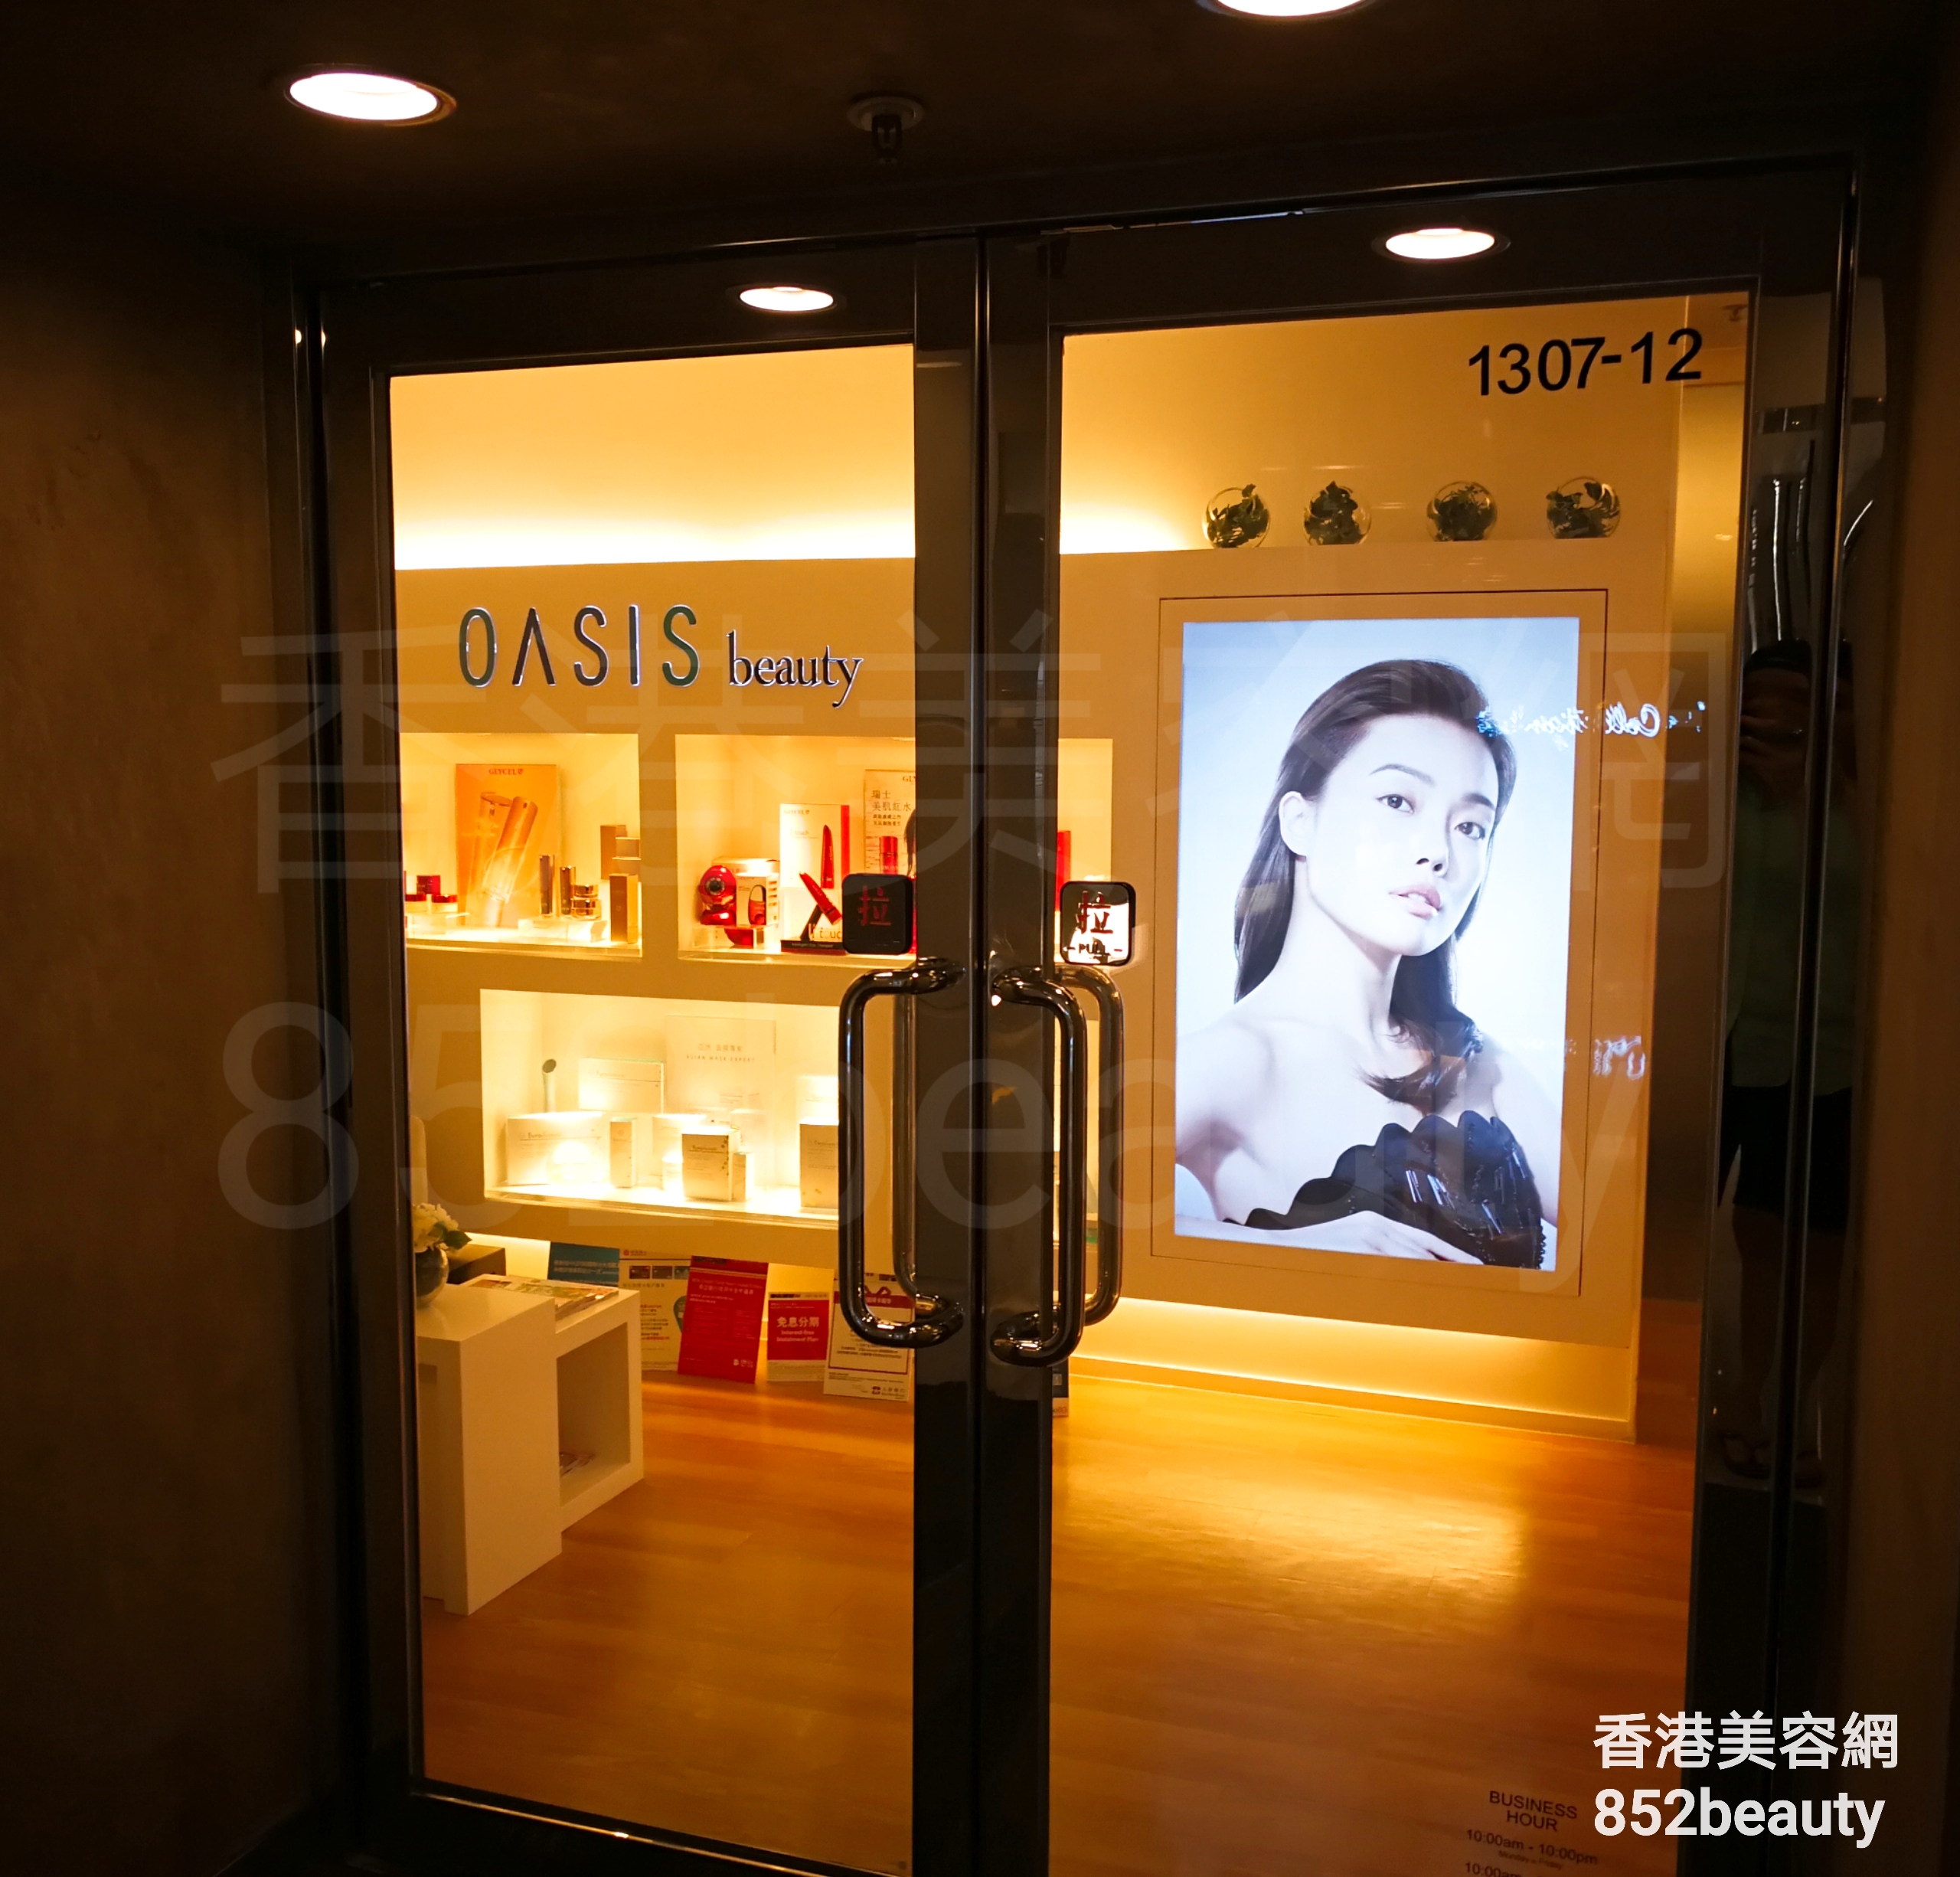 美容院 Beauty Salon 集团OASIS Beauty (沙田店) @ 香港美容网 HK Beauty Salon